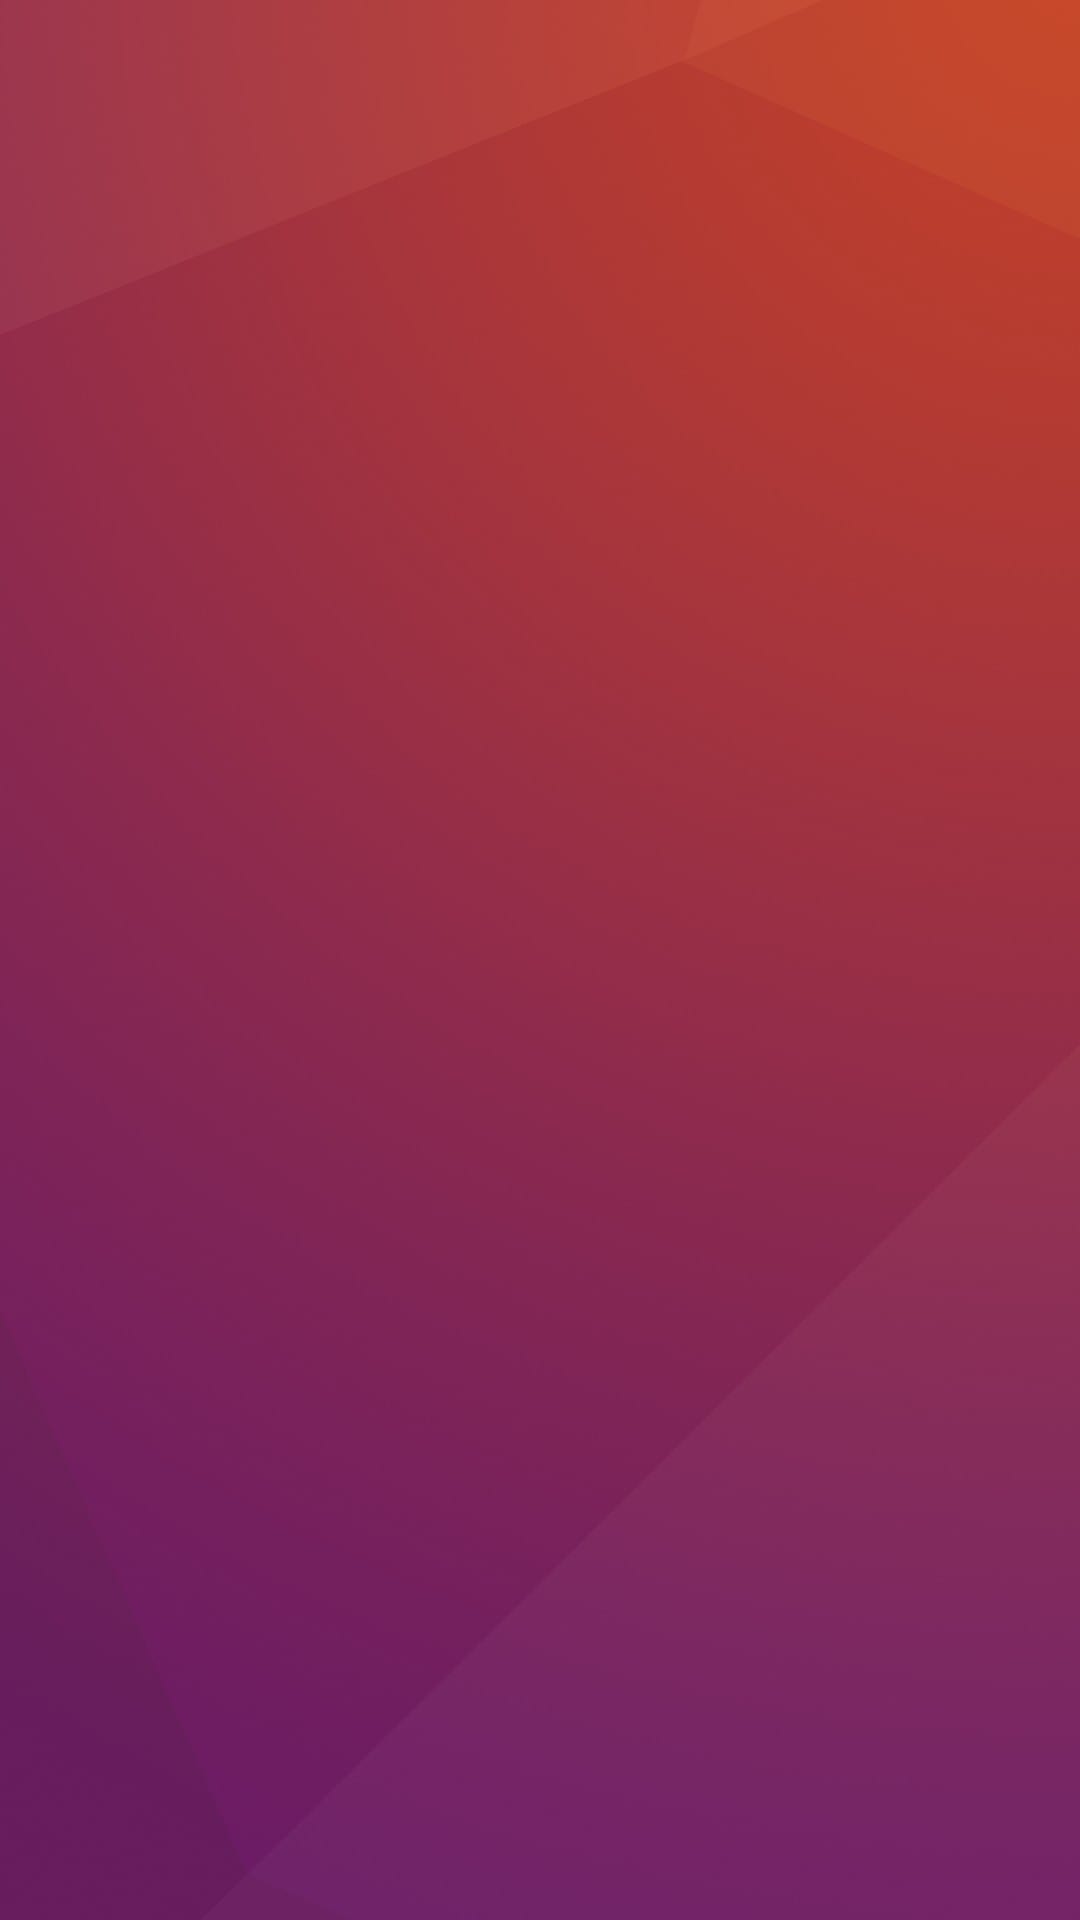 Ubuntu Phone Wallpapers